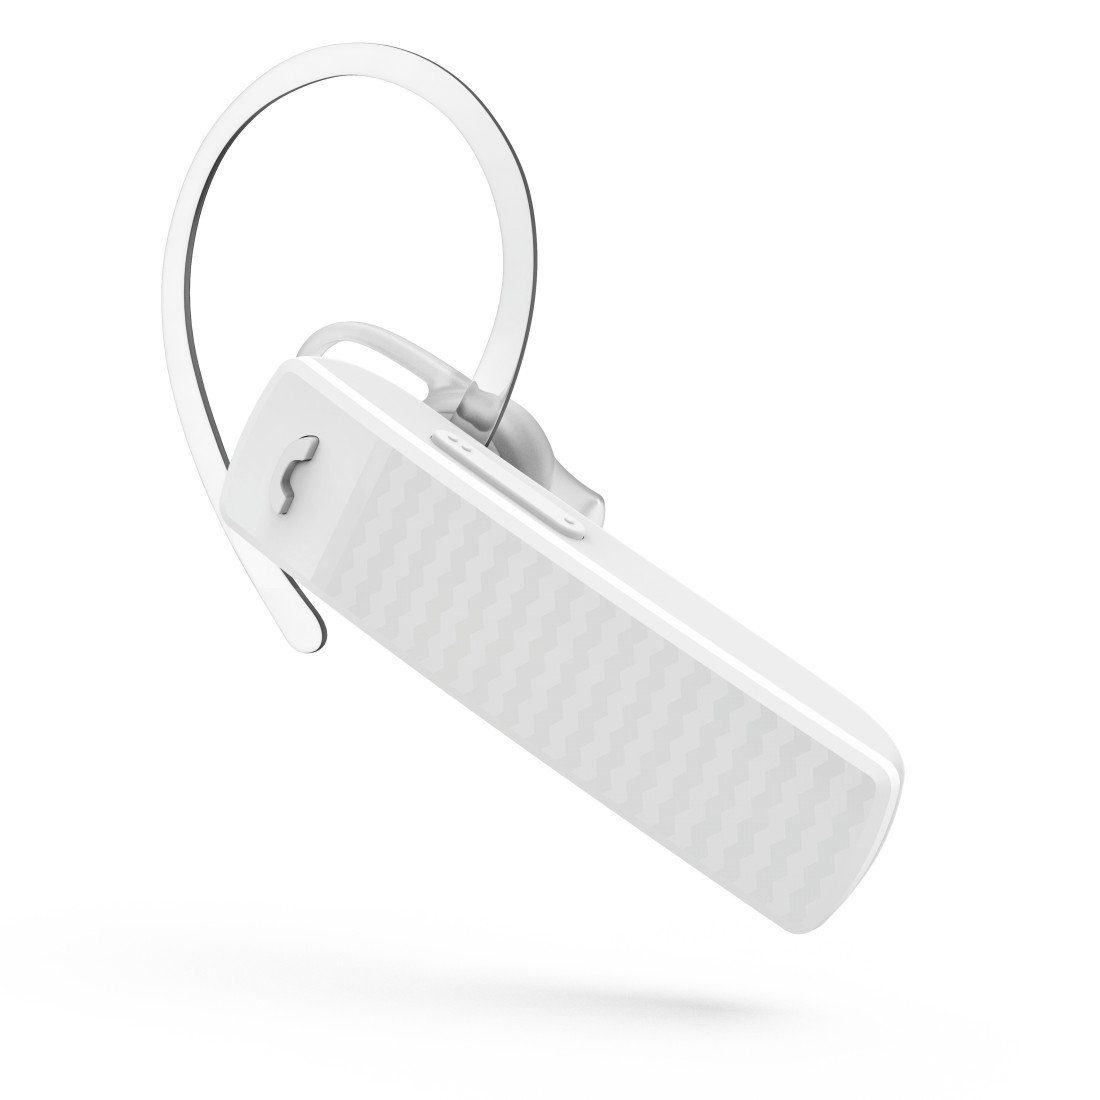 Hama Mono Bluetooth®-Headset "MyVoice1500", Multipoint, Sprachsteuerung Wireless-Headset